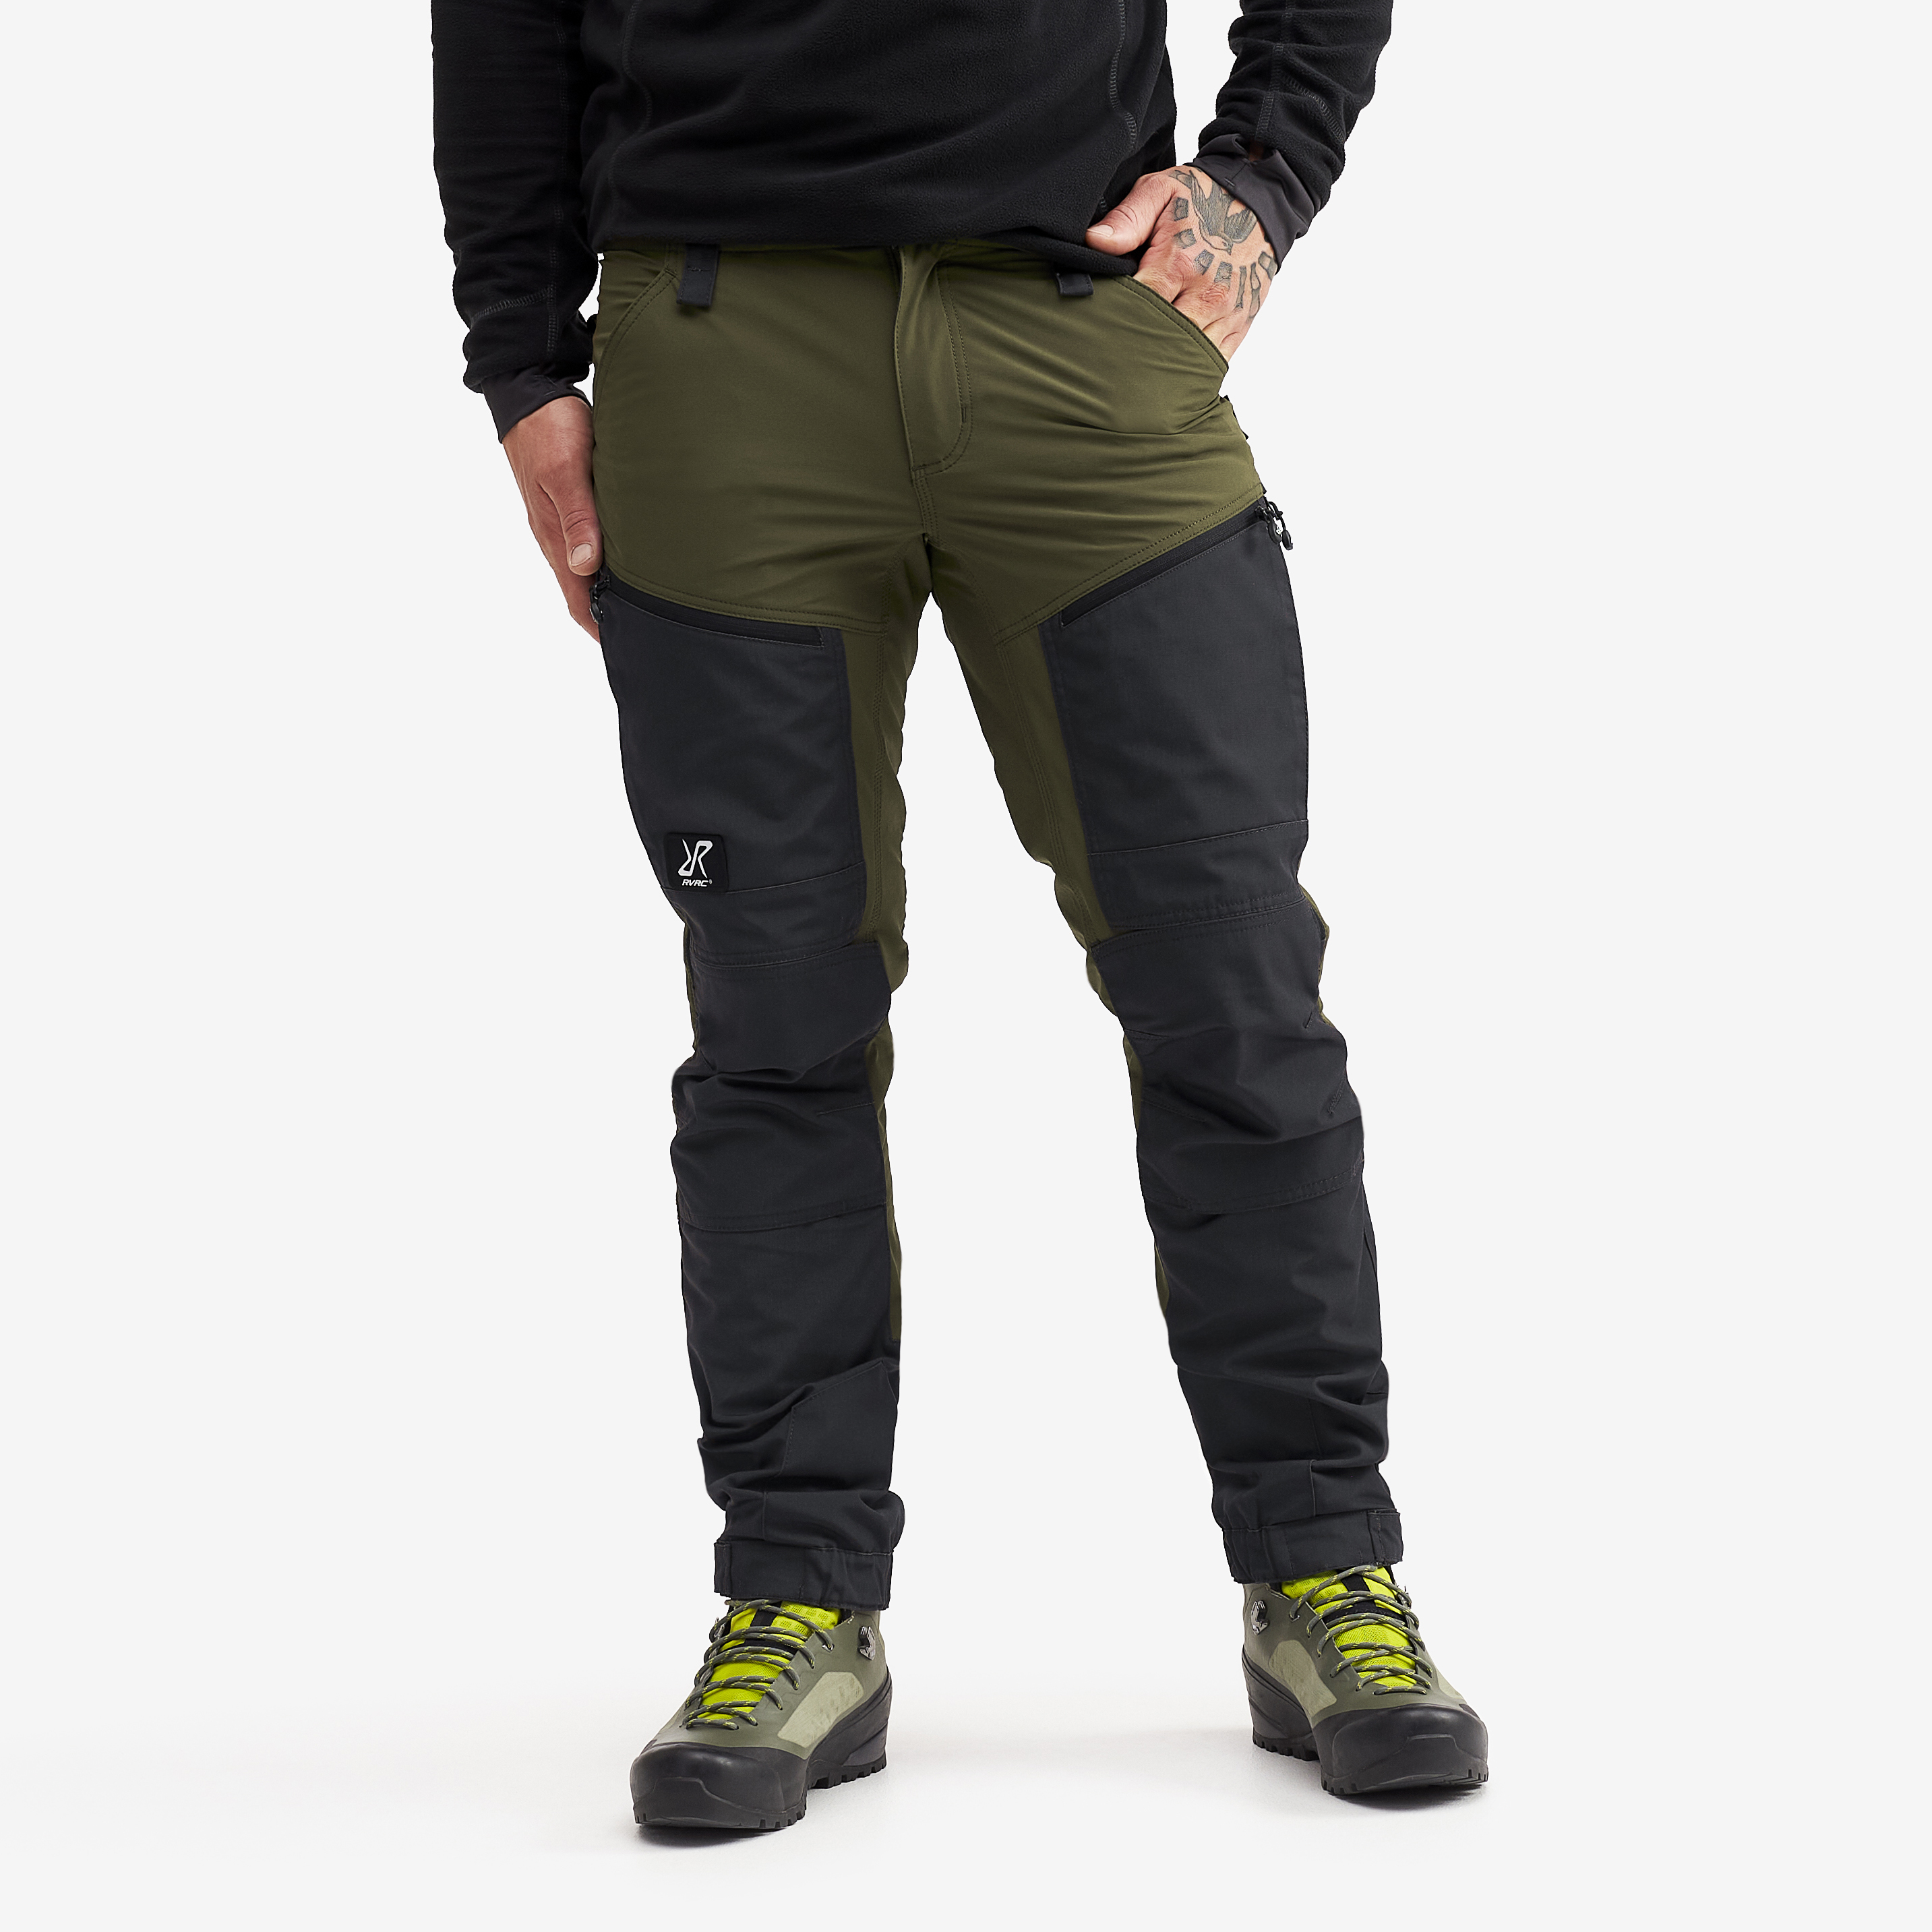 RVRC GP Pro Short spodnie trekkingowe męskie zielony